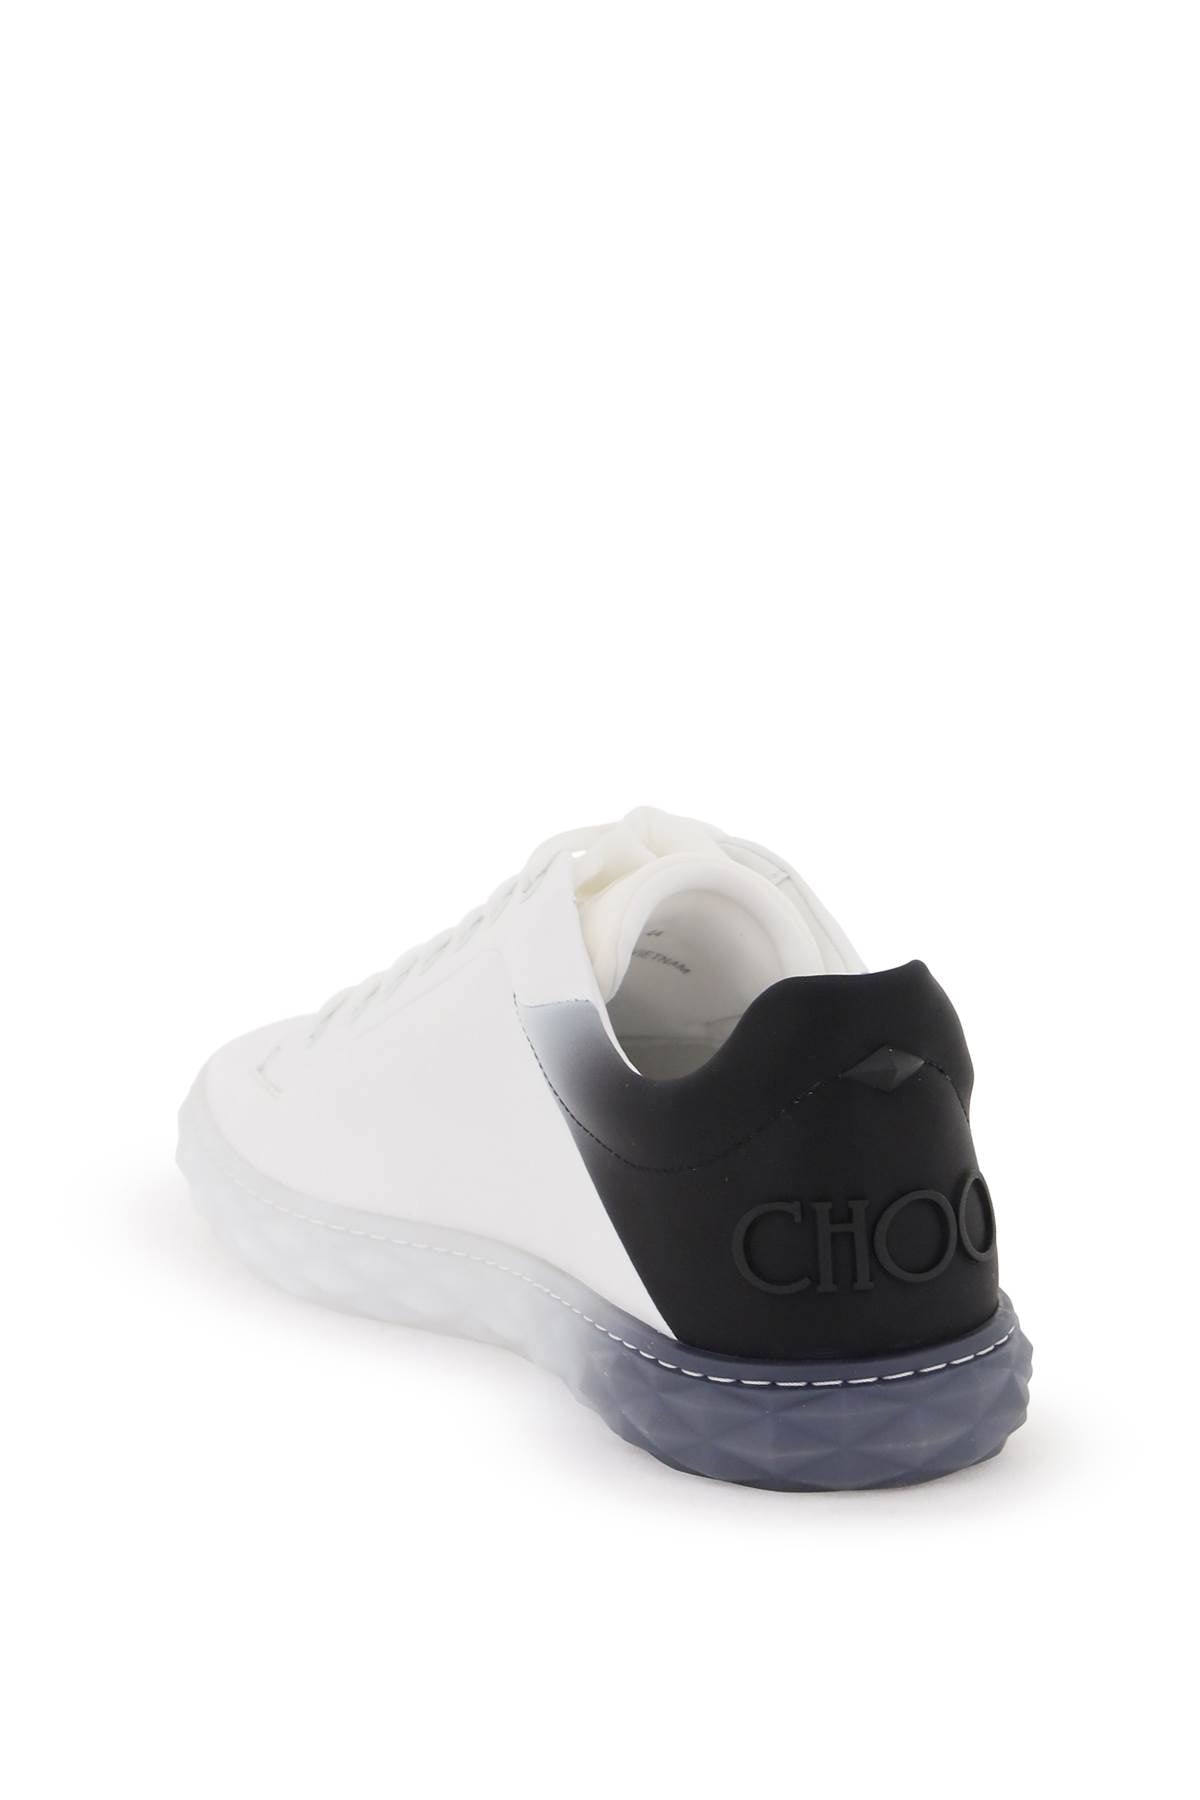 Jimmy choo diamond light/m ii sneakers-2